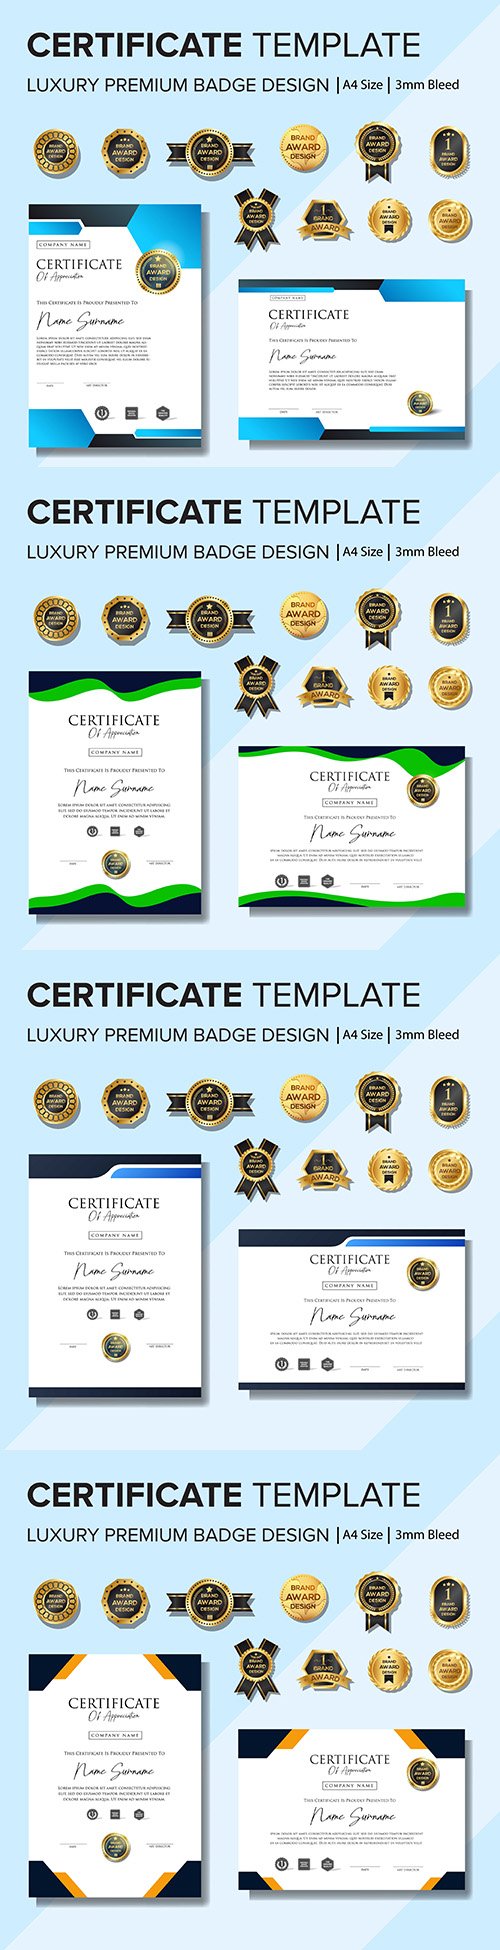 Certificate and premium badges design creative